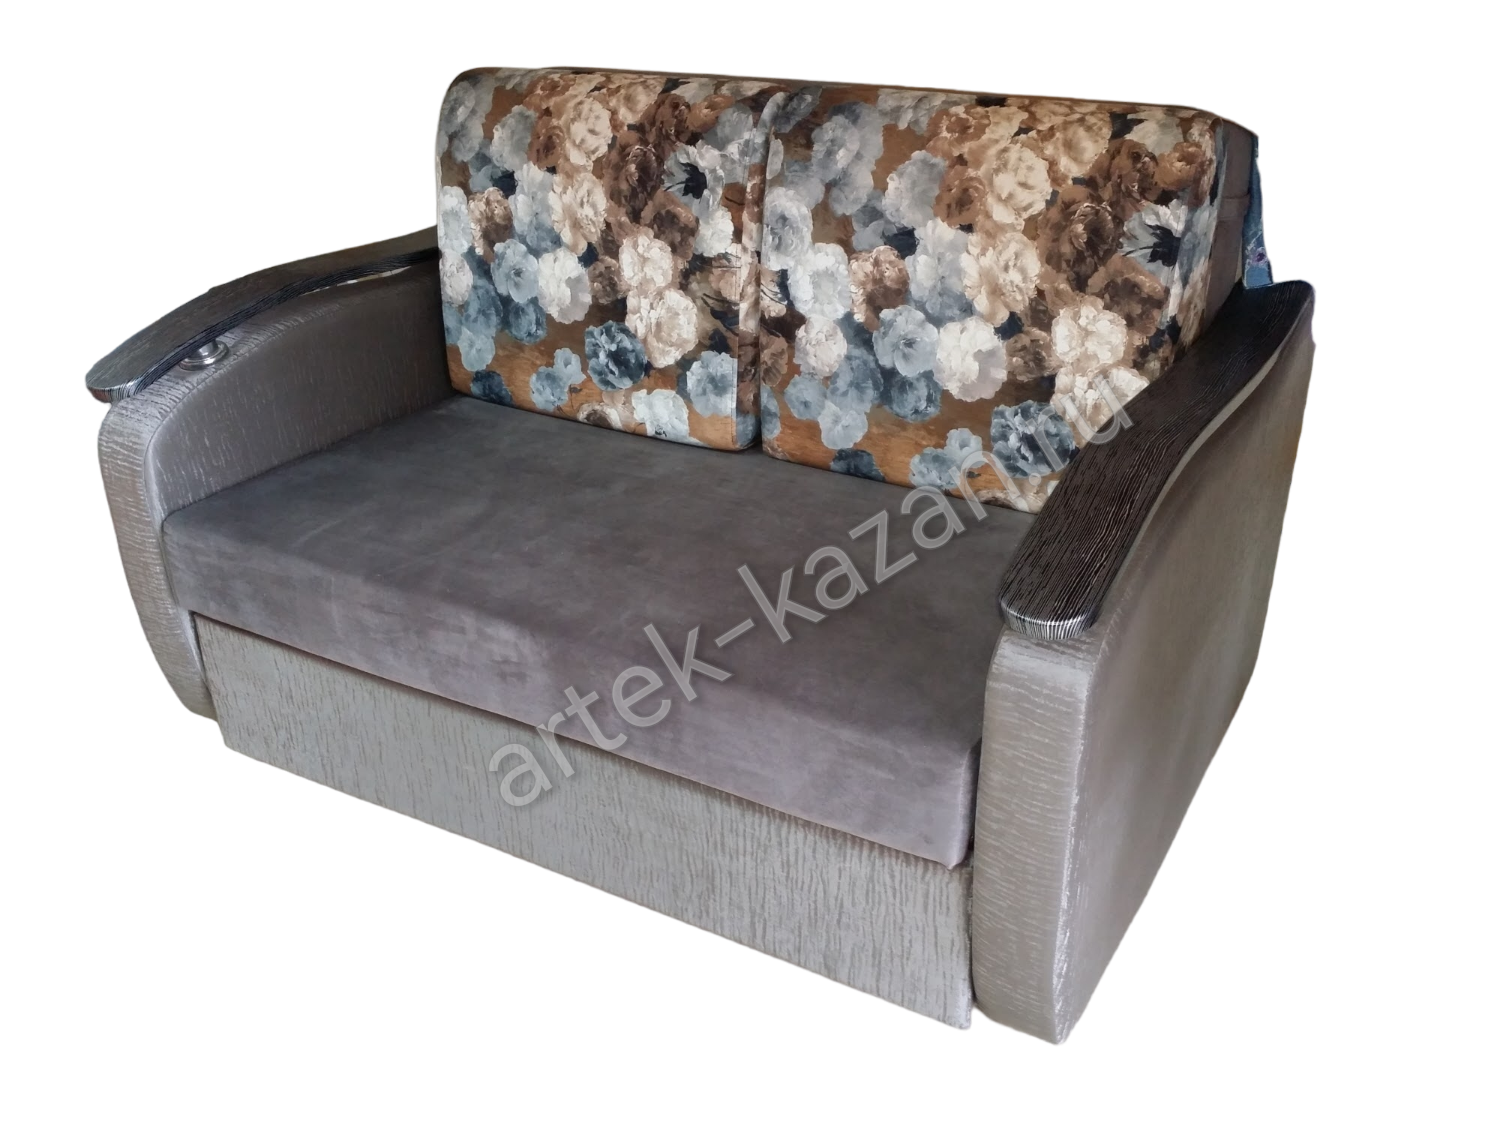 Мини диван на выкатном механизме Миник фото № 16. Купить недорогой диван по низкой цене от производителя можно у нас.